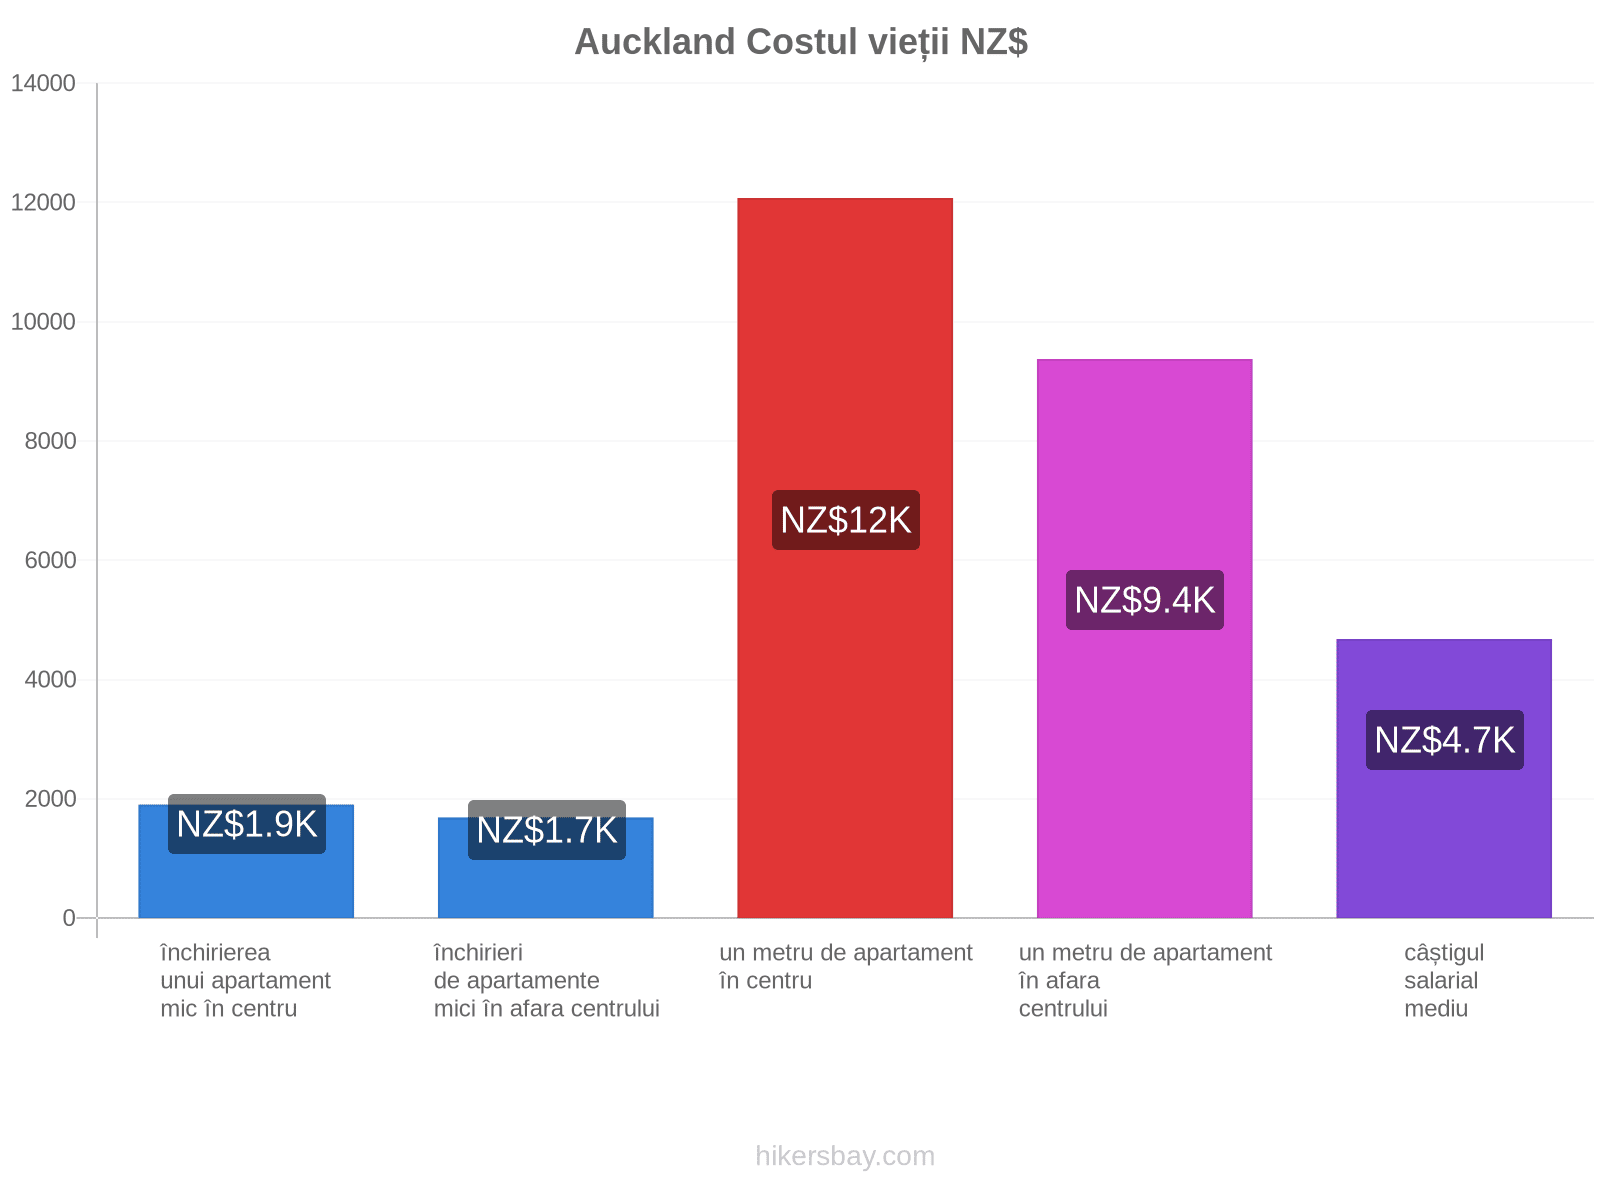 Auckland costul vieții hikersbay.com